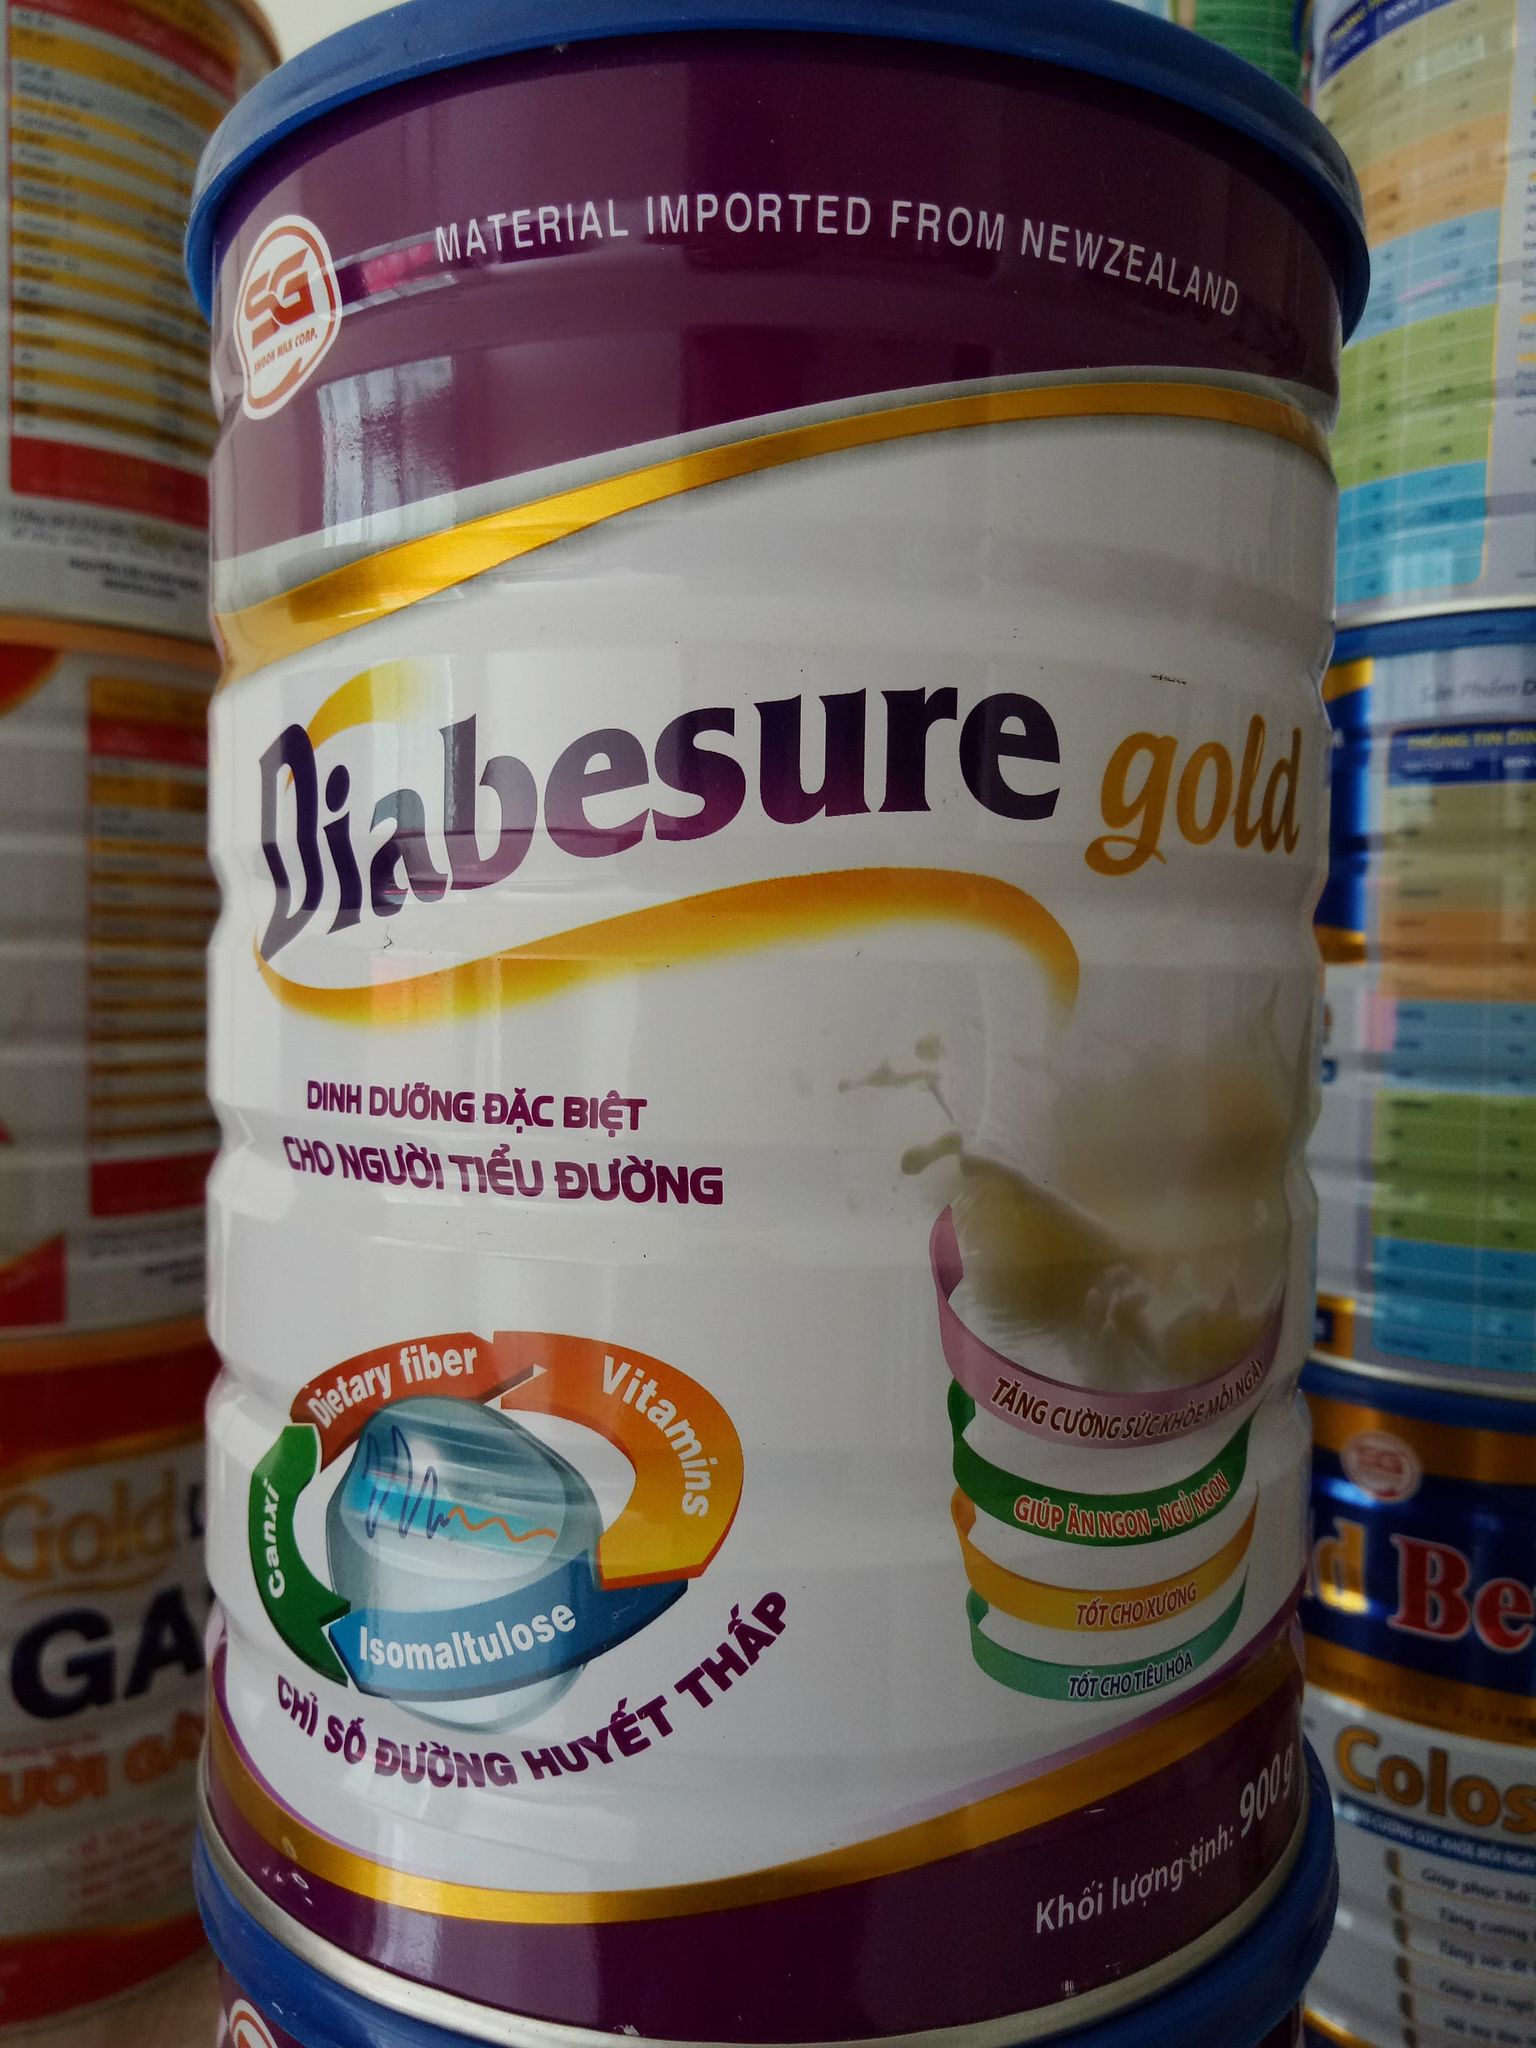 Sữa Dành Cho Người Tiểu Đường - Diabesure gold 900g